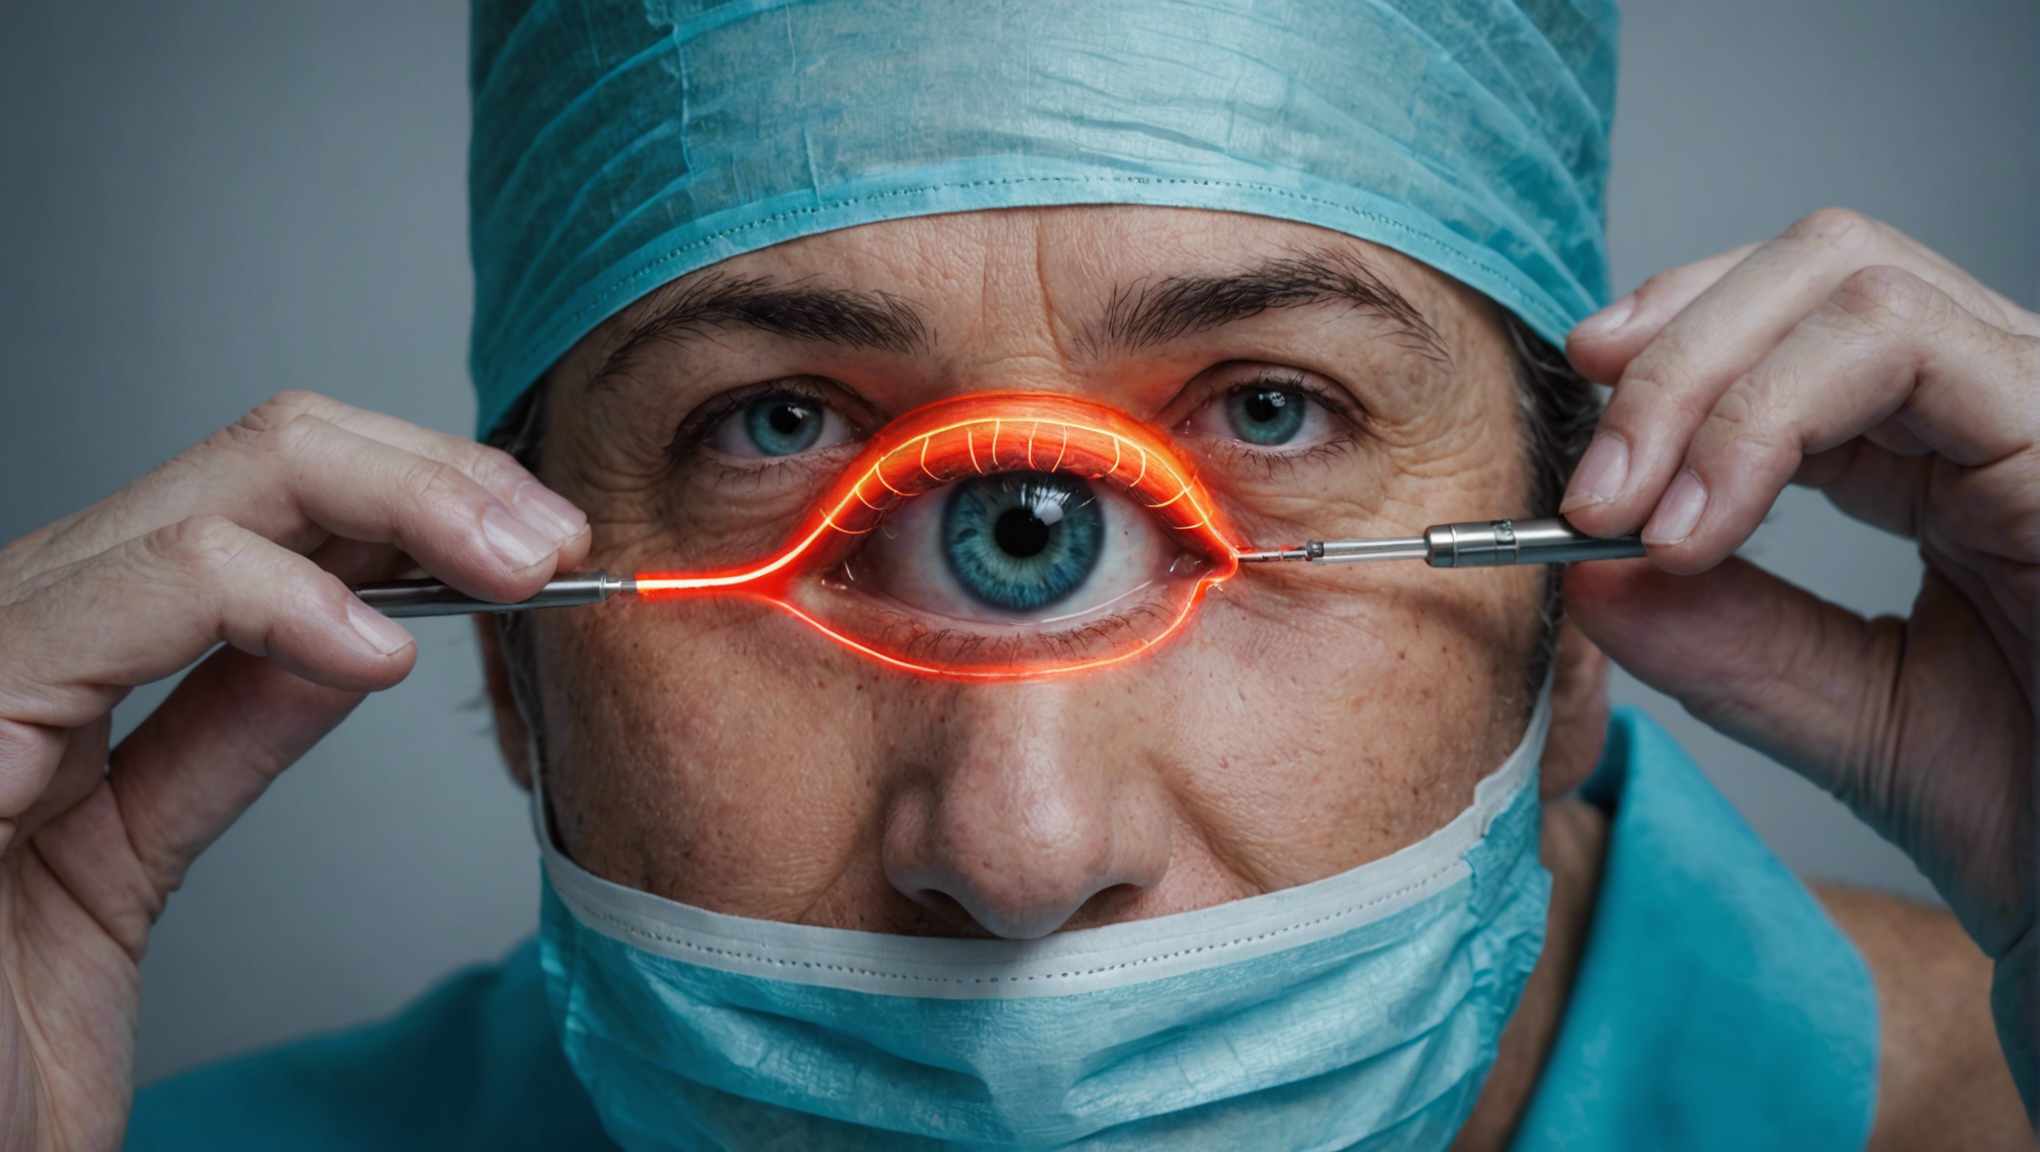 la chirurgie au laser pour dire adieu à la cataracte ! découvrez cette technique révolutionnaire pour retrouver une vision claire et nette.